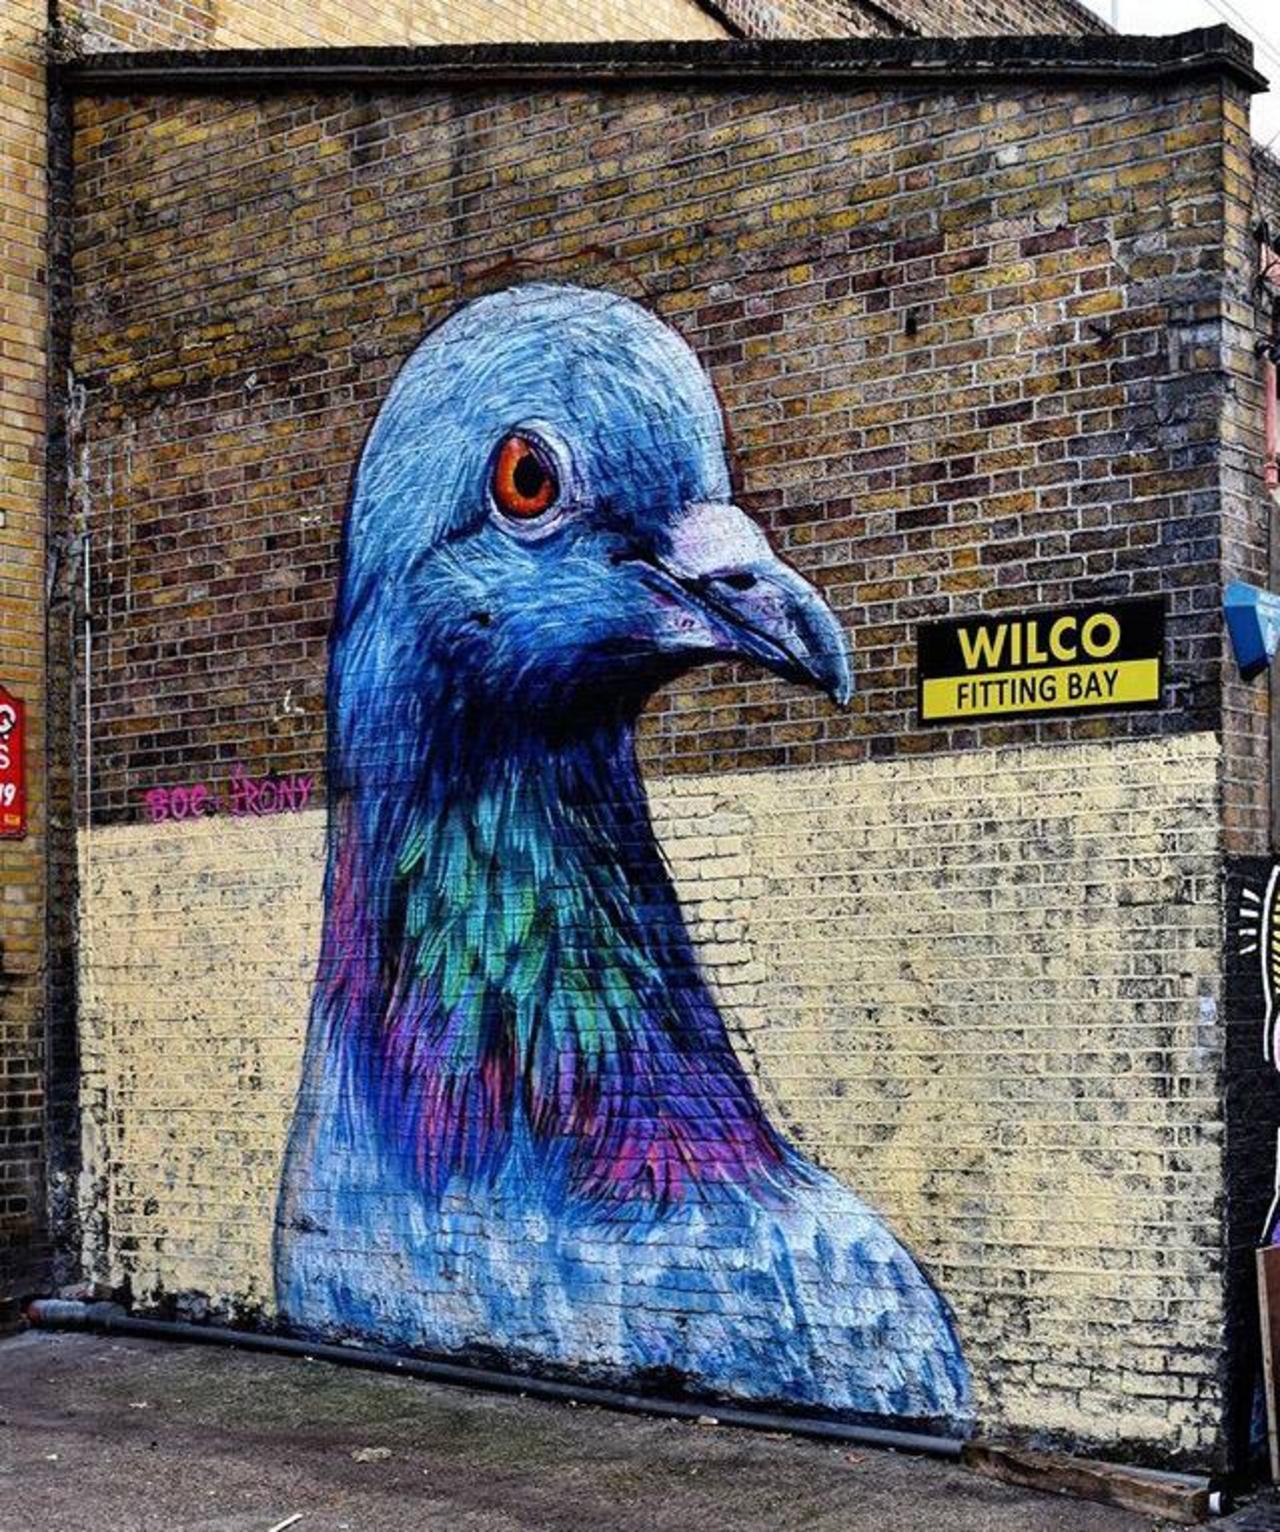 Street Art by Placee Boe & whoamirony in London 

#art #graffiti #mural #streetart http://t.co/gGjk6GOvaJ